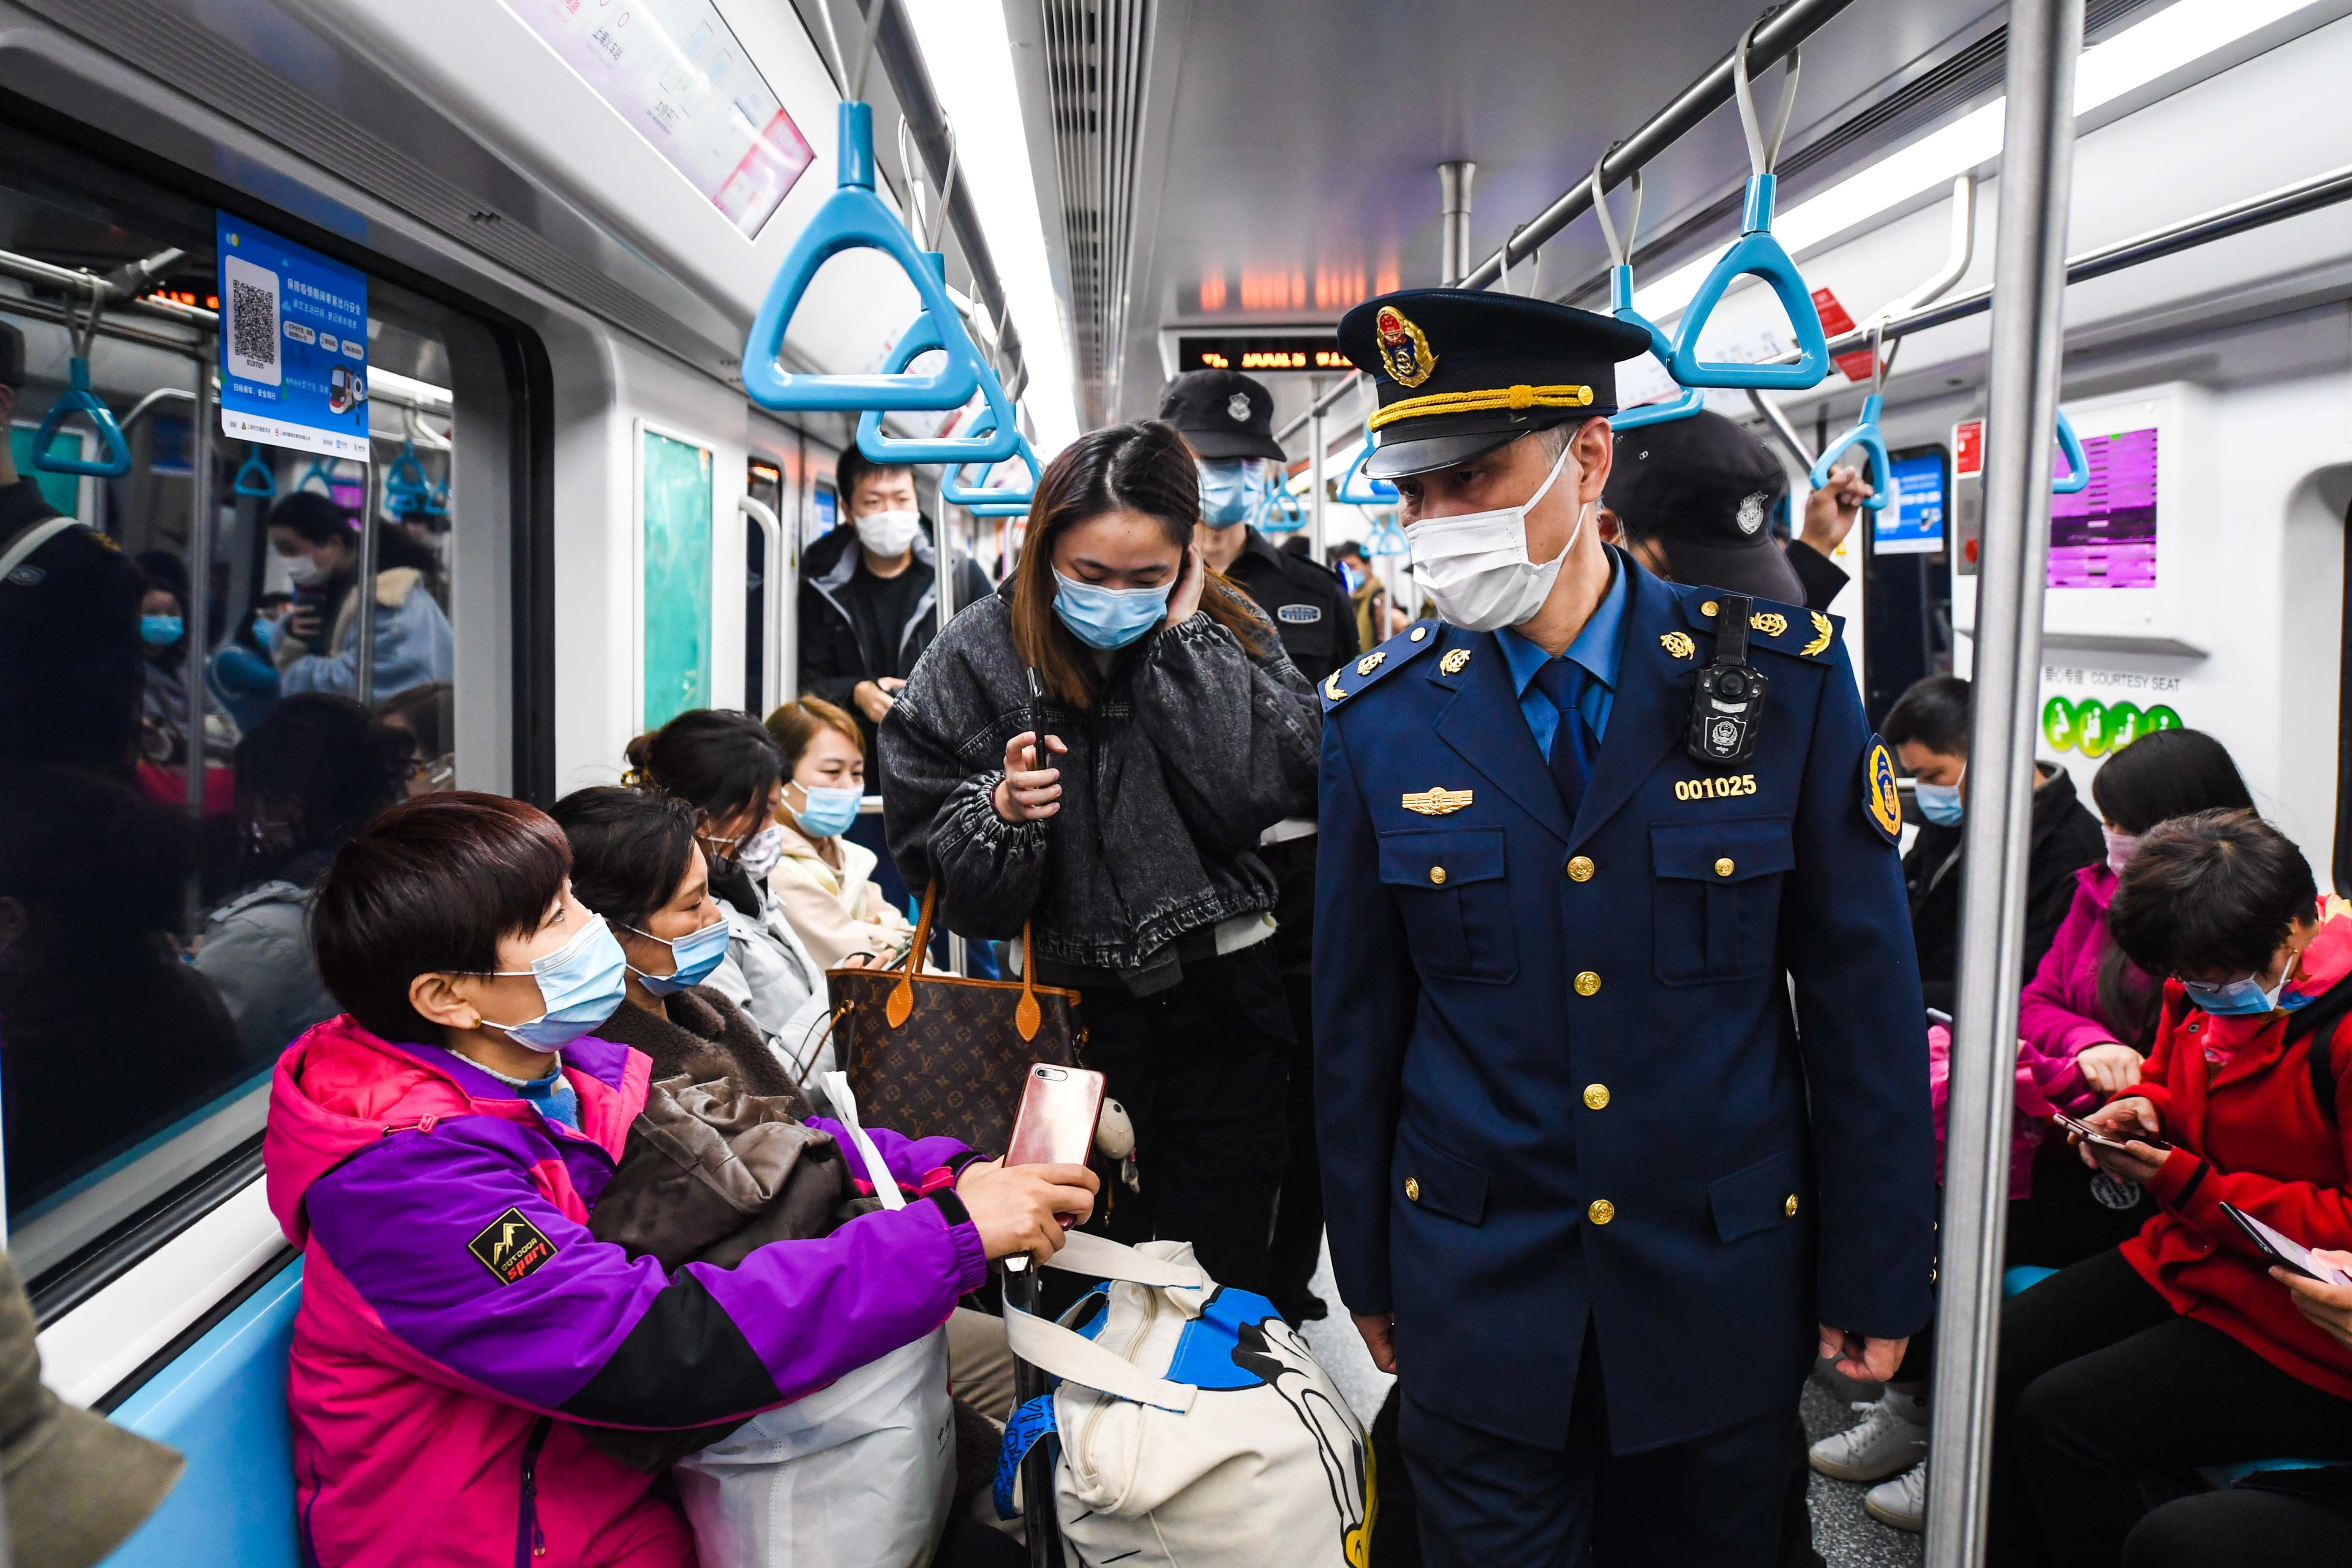 新版《上海市轨道交通乘客守则》今天正式实施|视频 | 守则